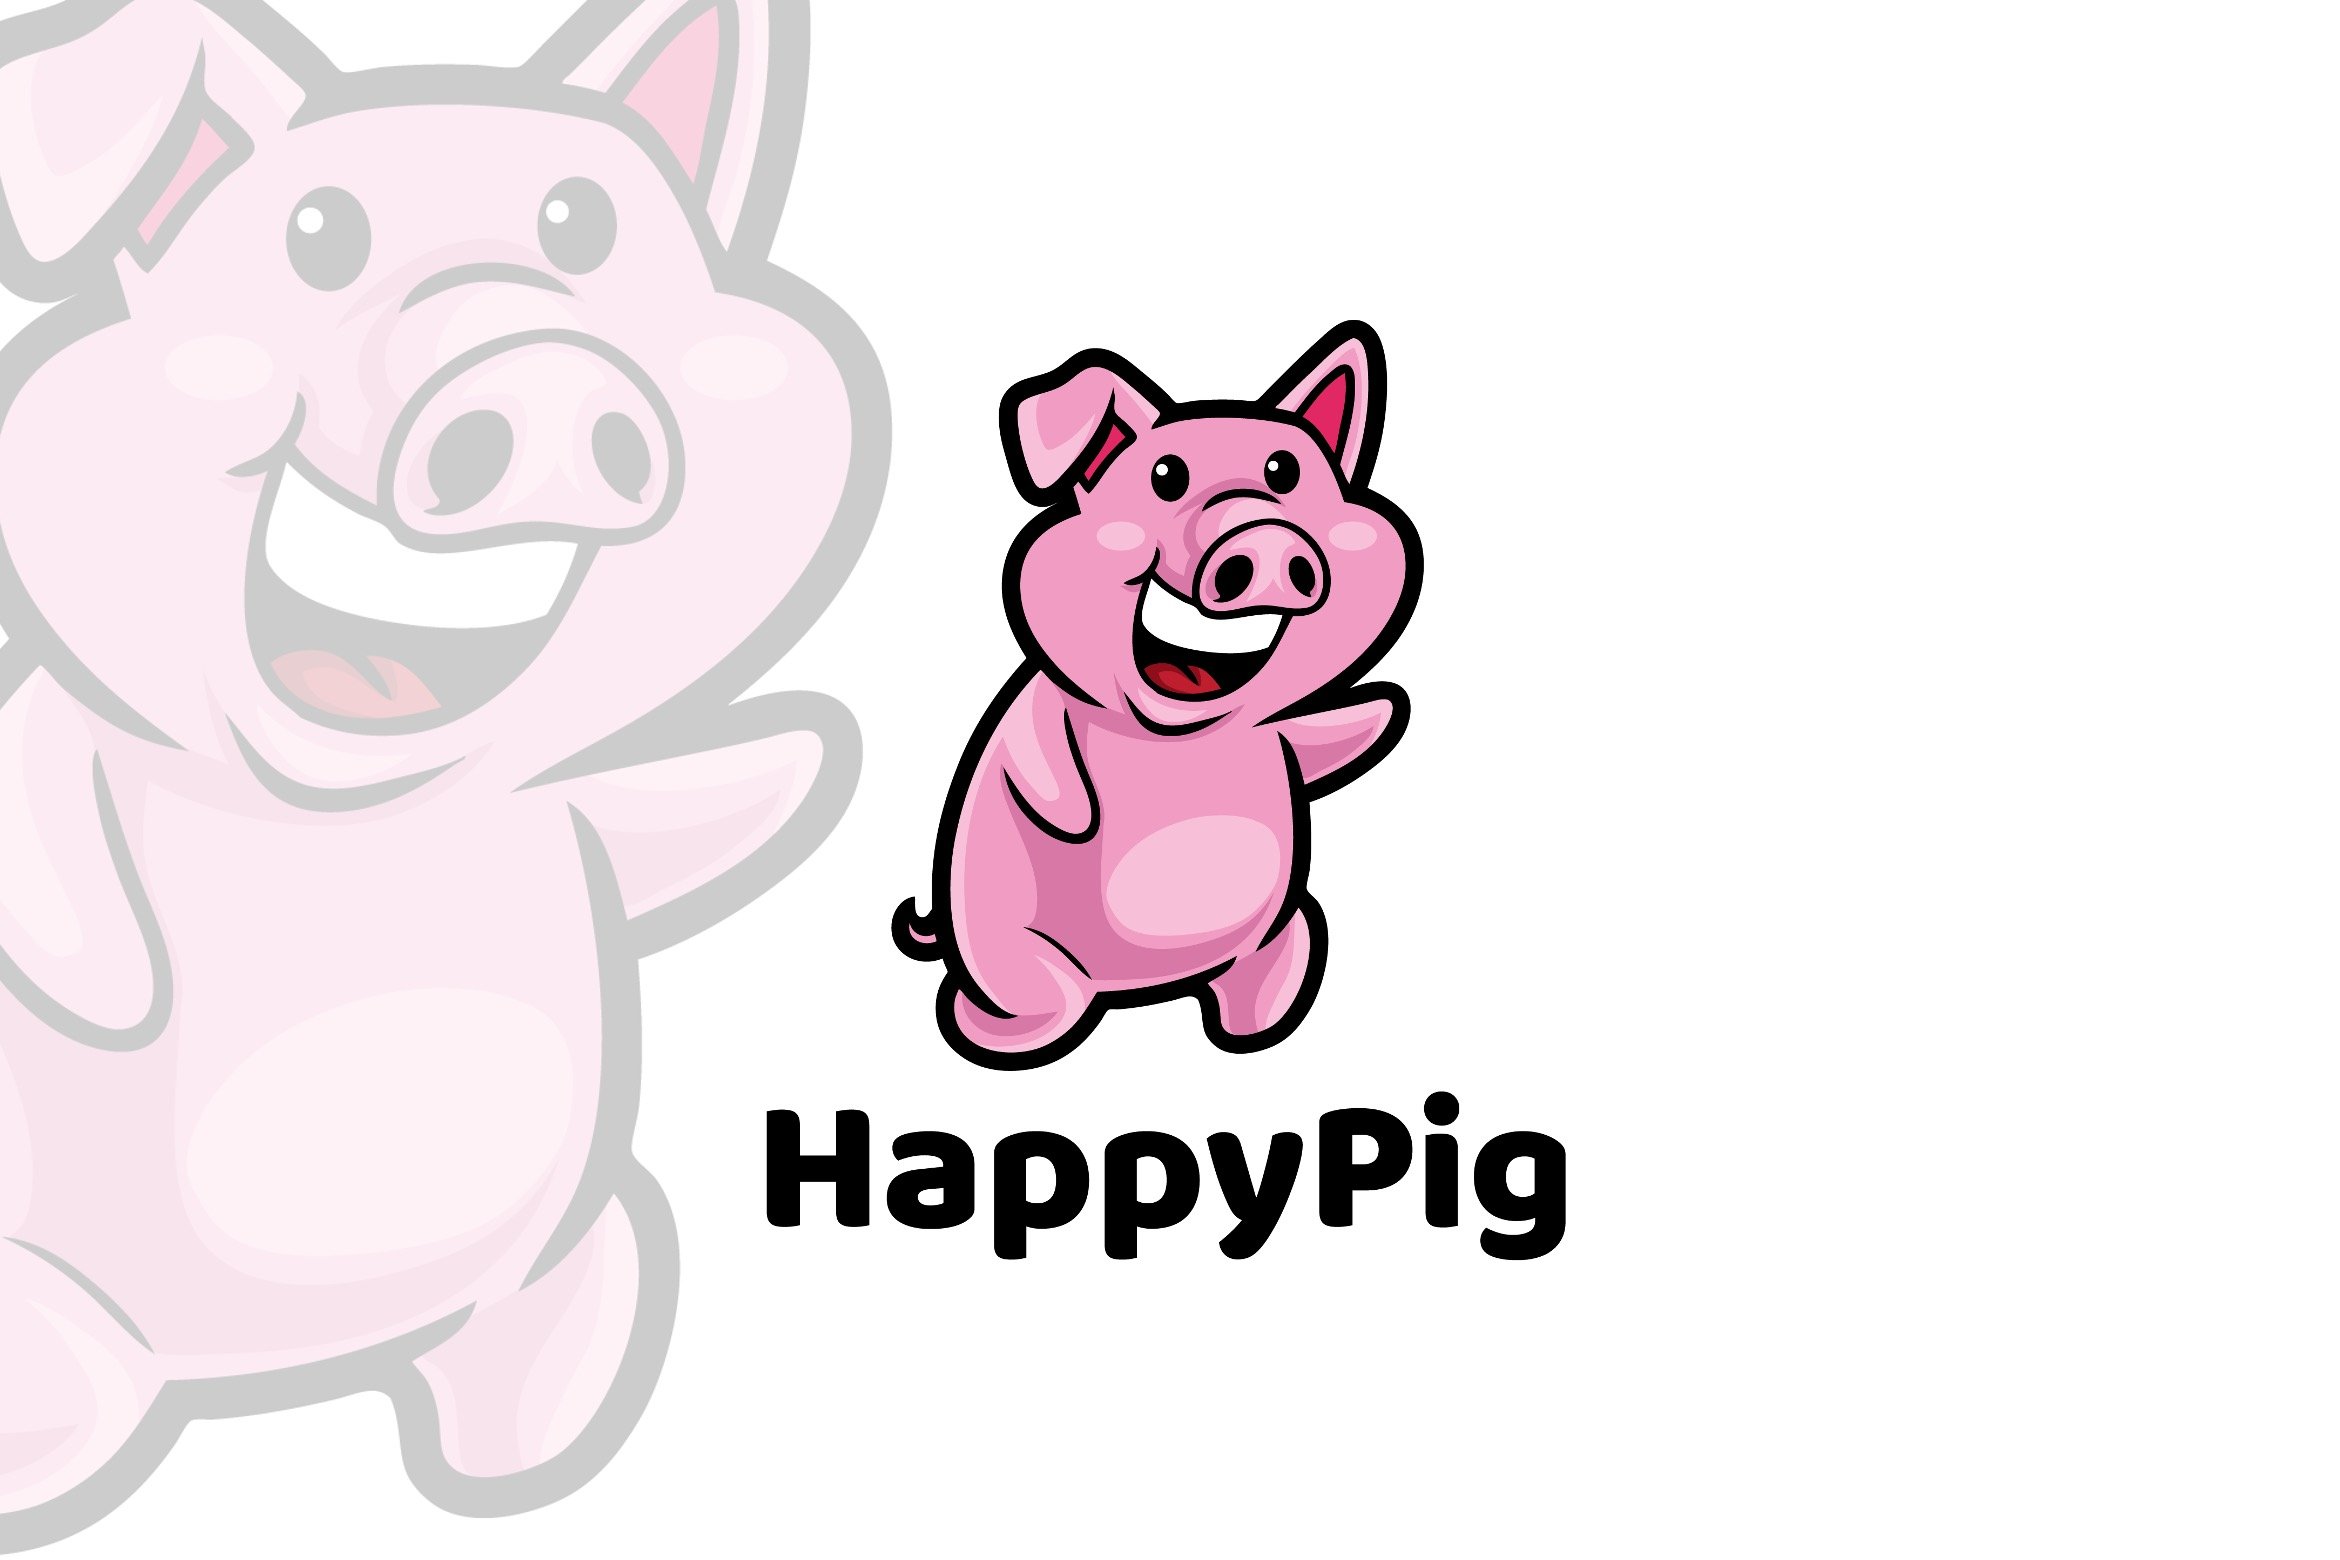 Happy Pig Cartoon Logo cover image.